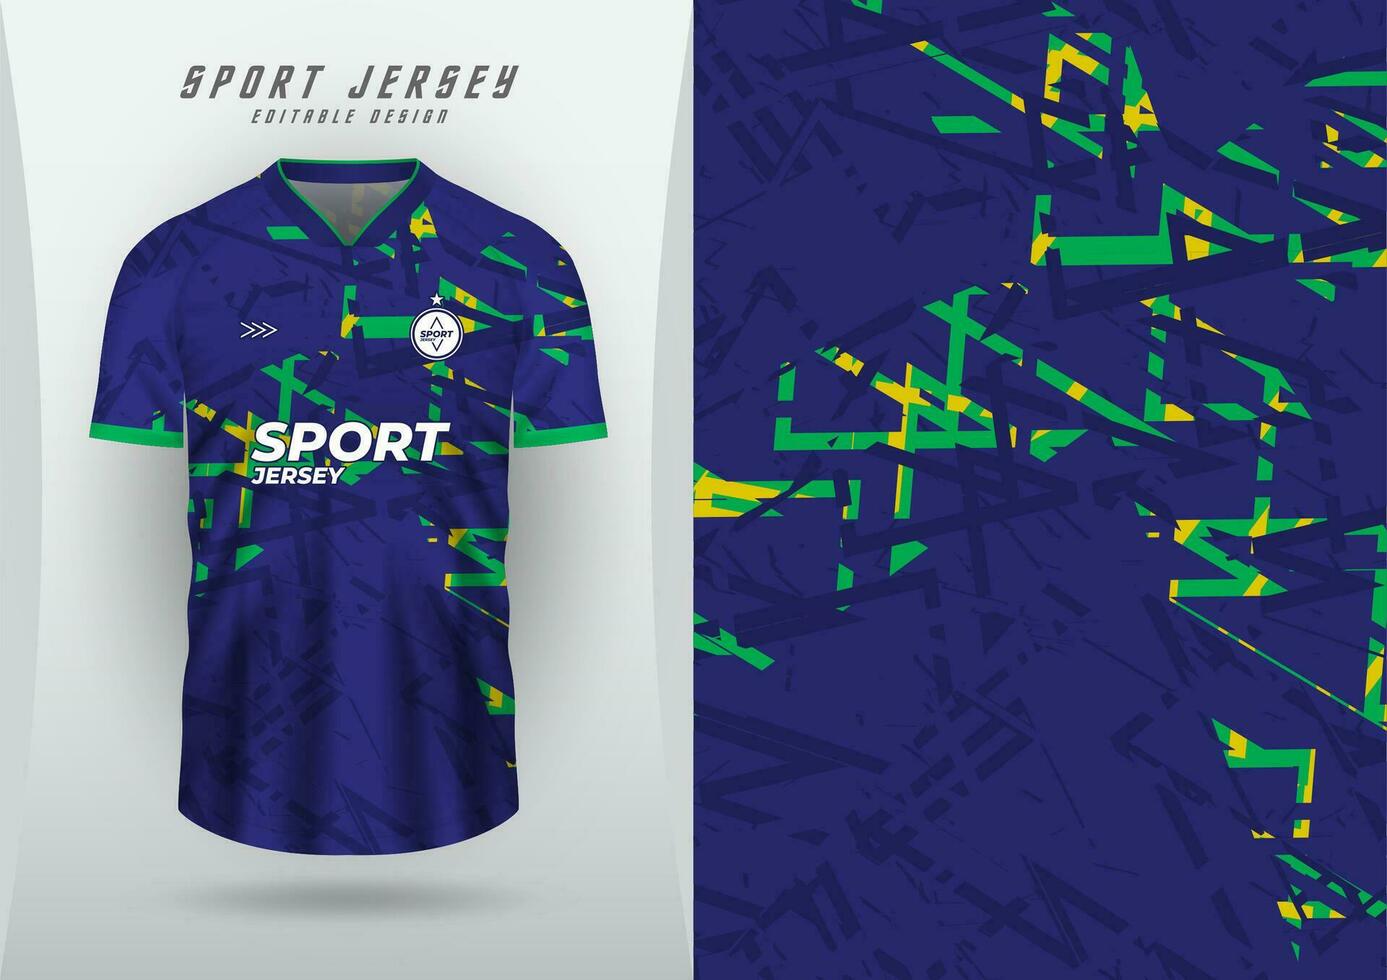 Hintergrund zum Sport Jersey, Fußball Jersey, Laufen Jersey, Rennen Jersey, blau-grün-gelb Grunge Muster. vektor